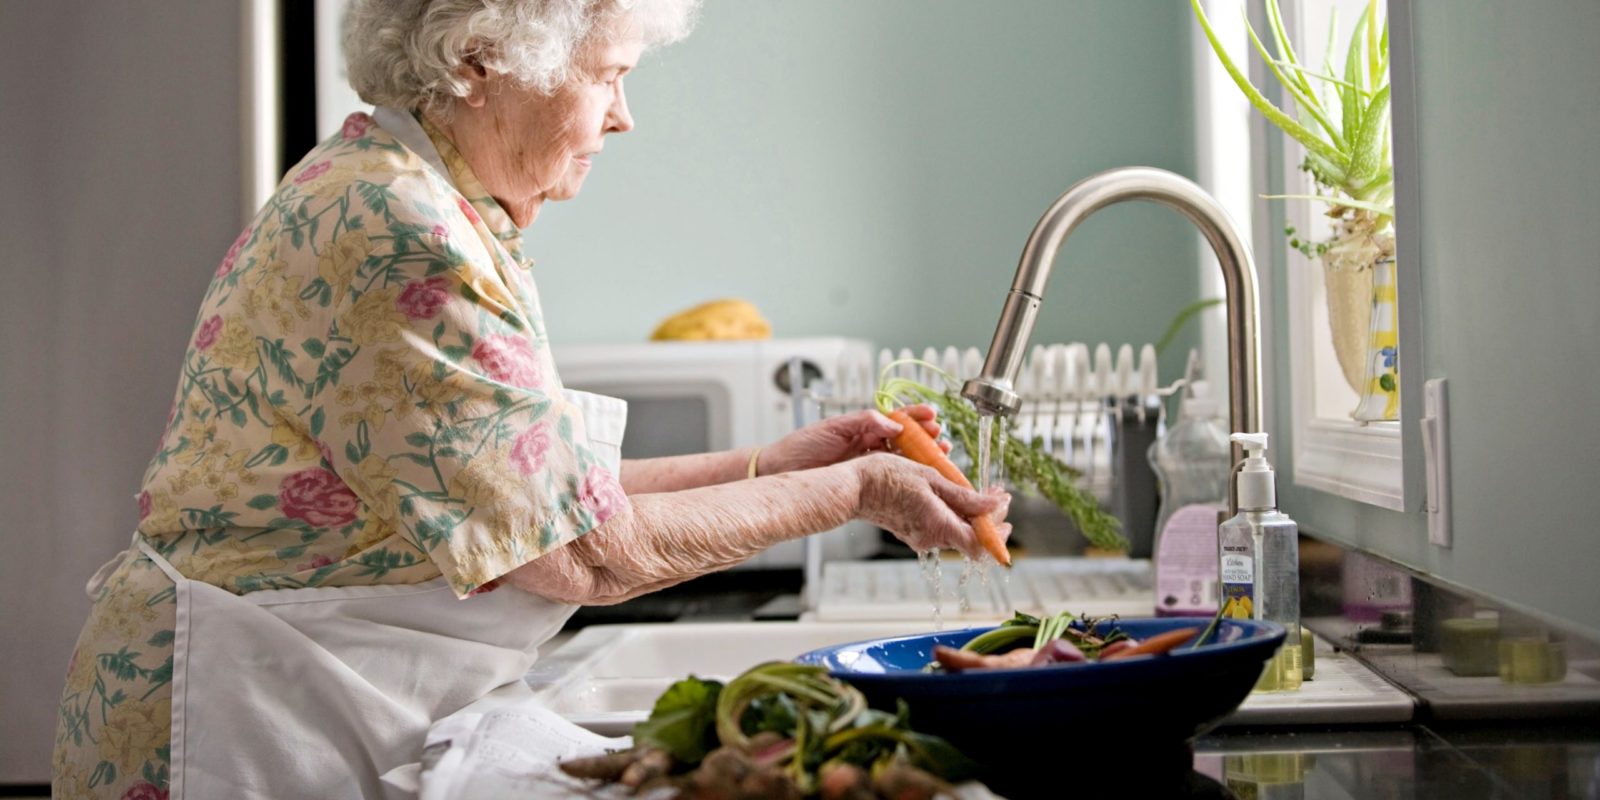 What Foods Should Parkinsons Patients Avoid?